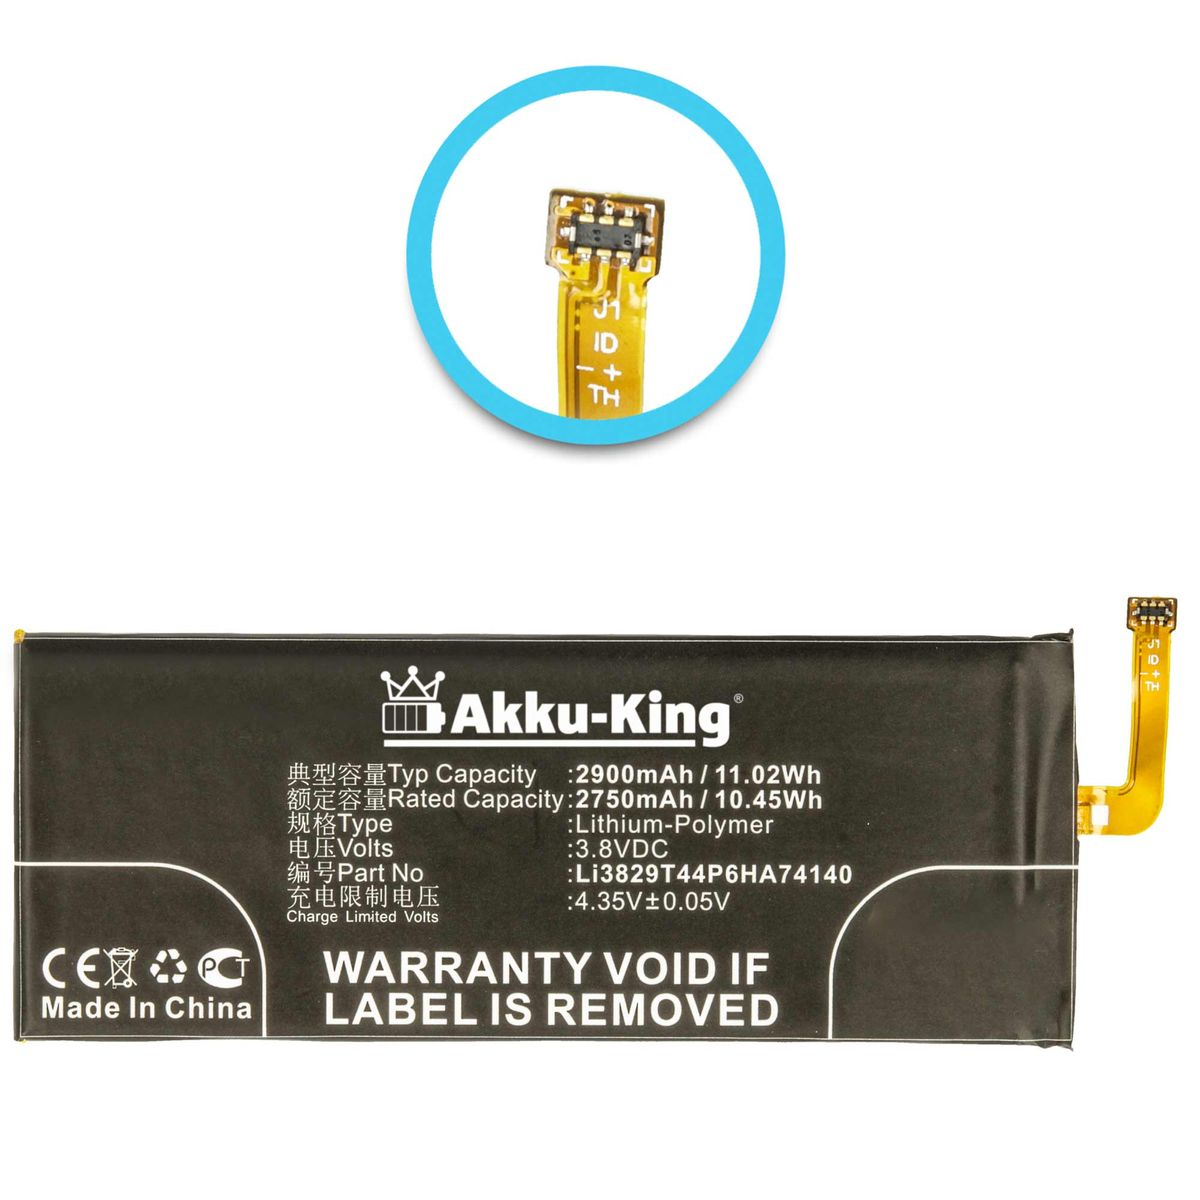 AKKU-KING Akku kompatibel 3.8 Li-Polymer Handy-Akku, mit 2900mAh Li3829T44P6HA74140 ZTE Volt